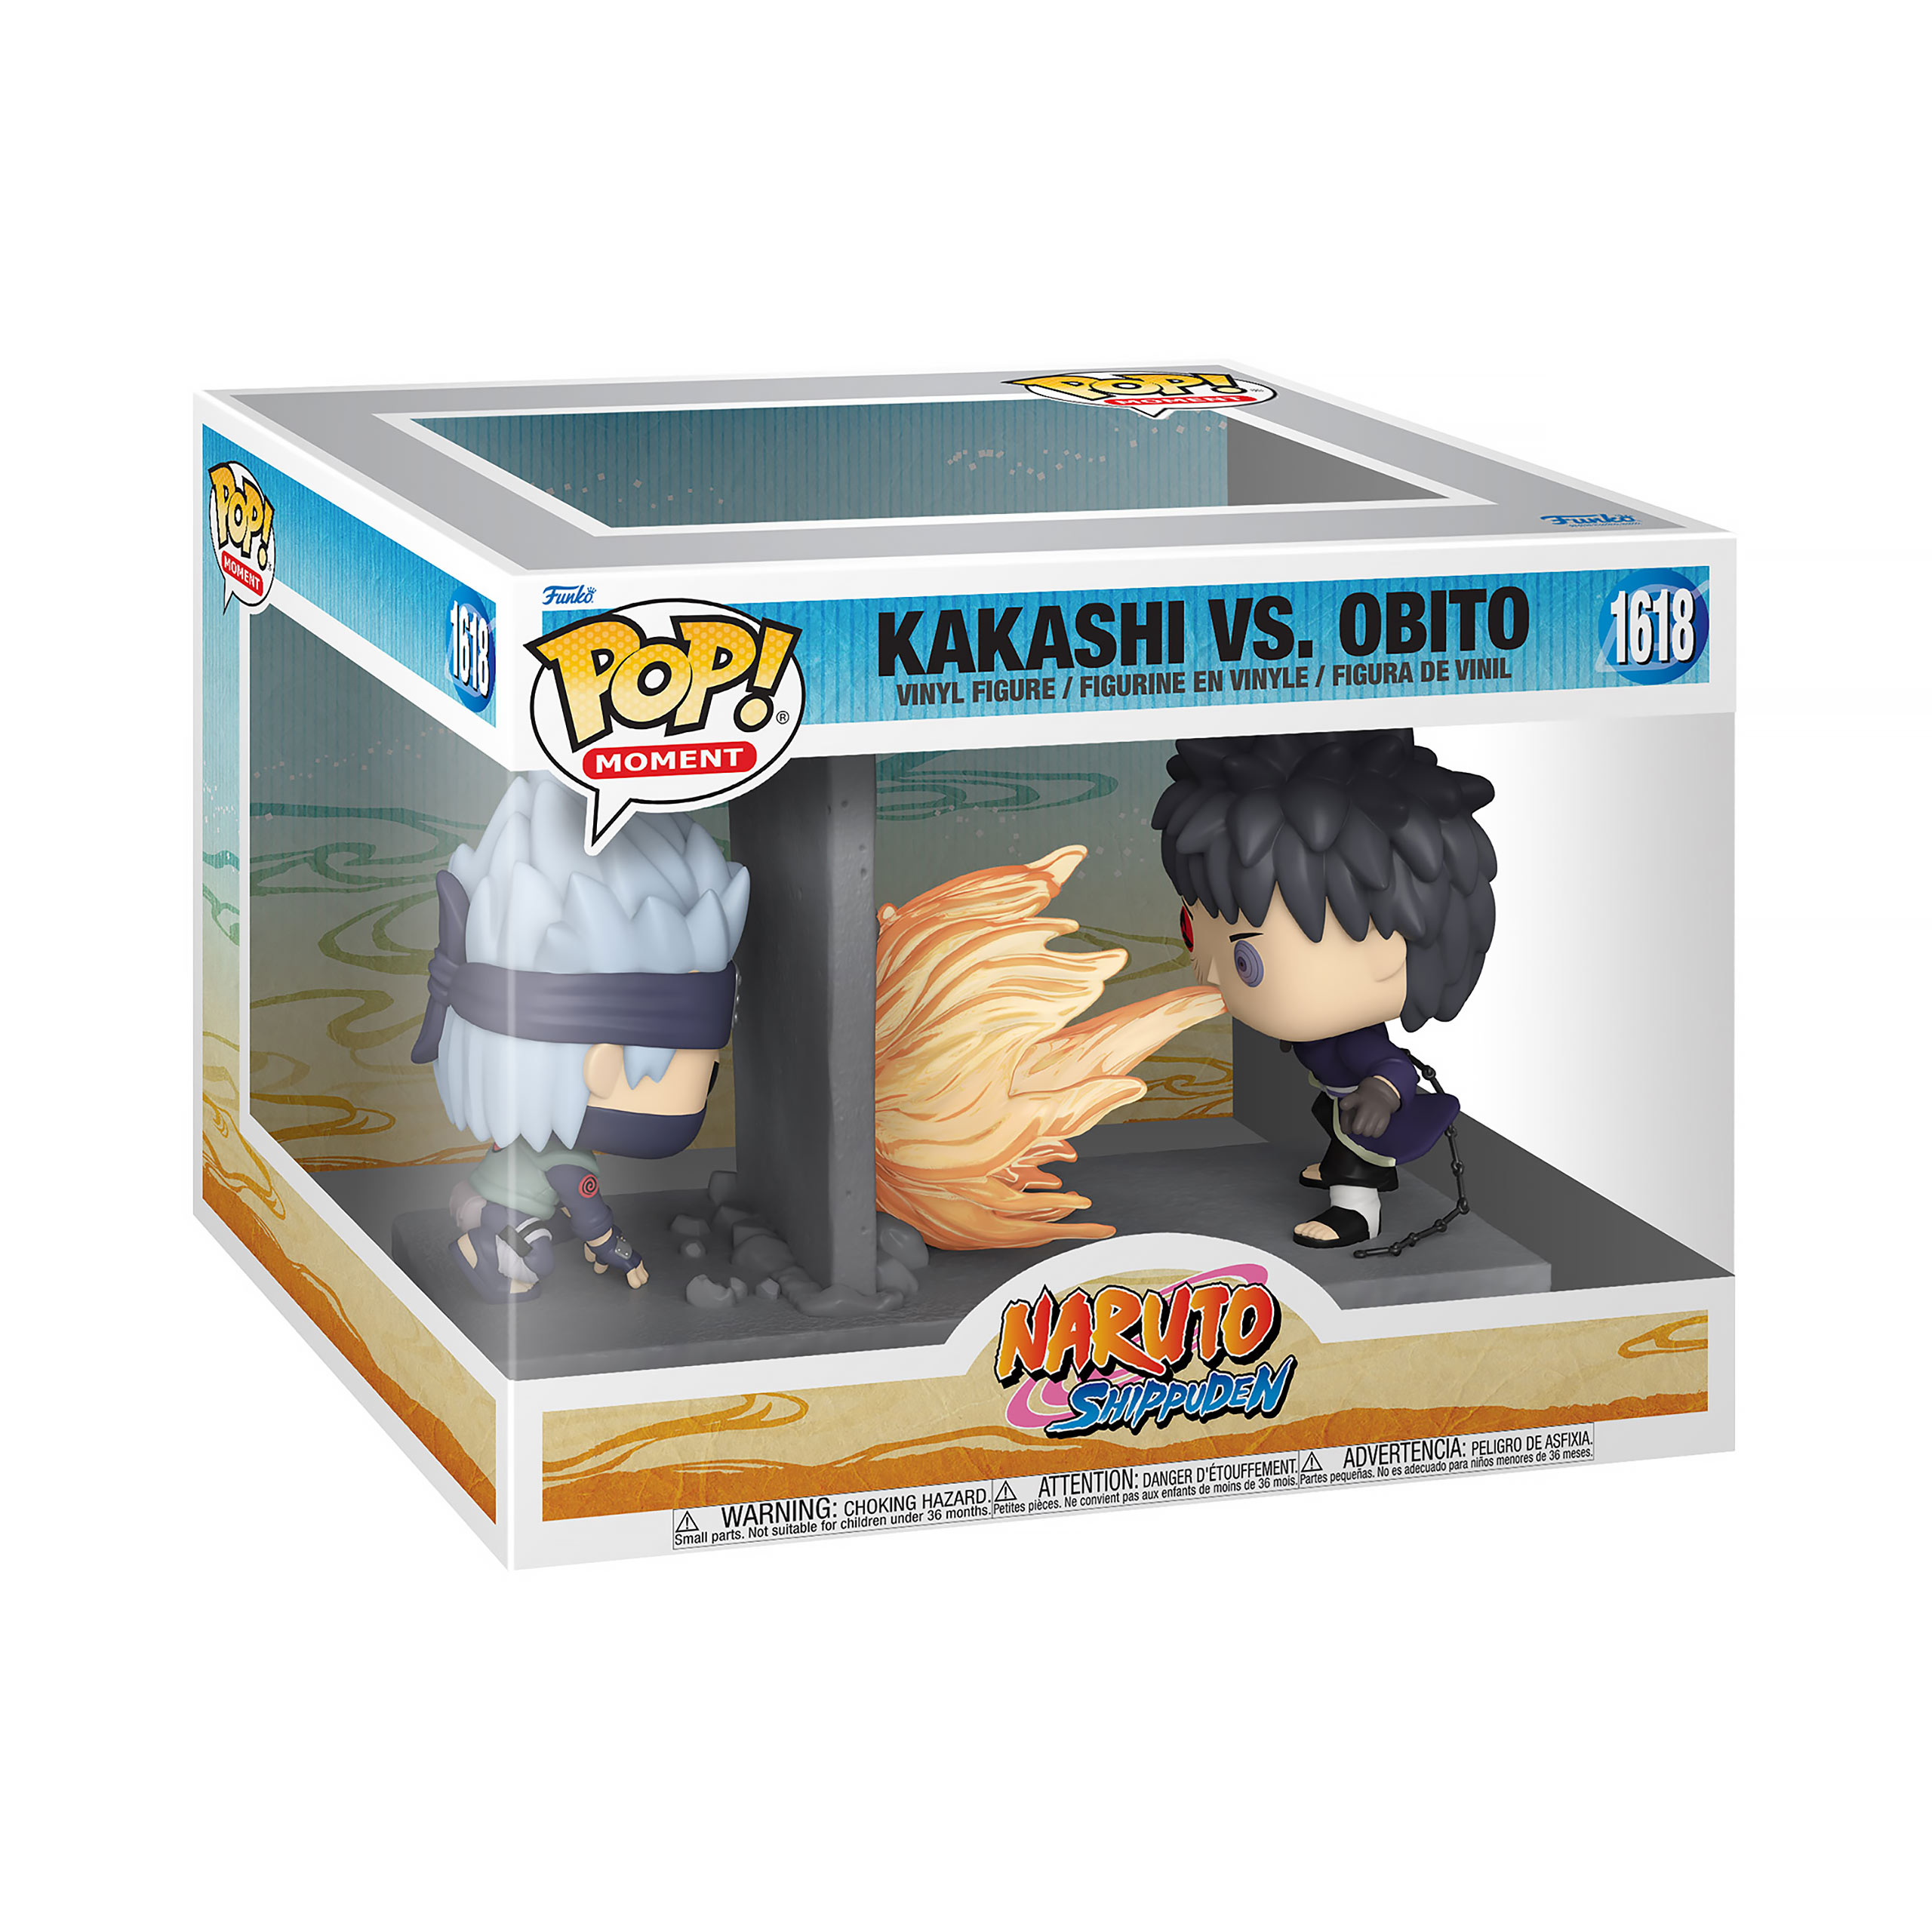 Naruto - Kakashi vs. Obito Funko Pop figure set